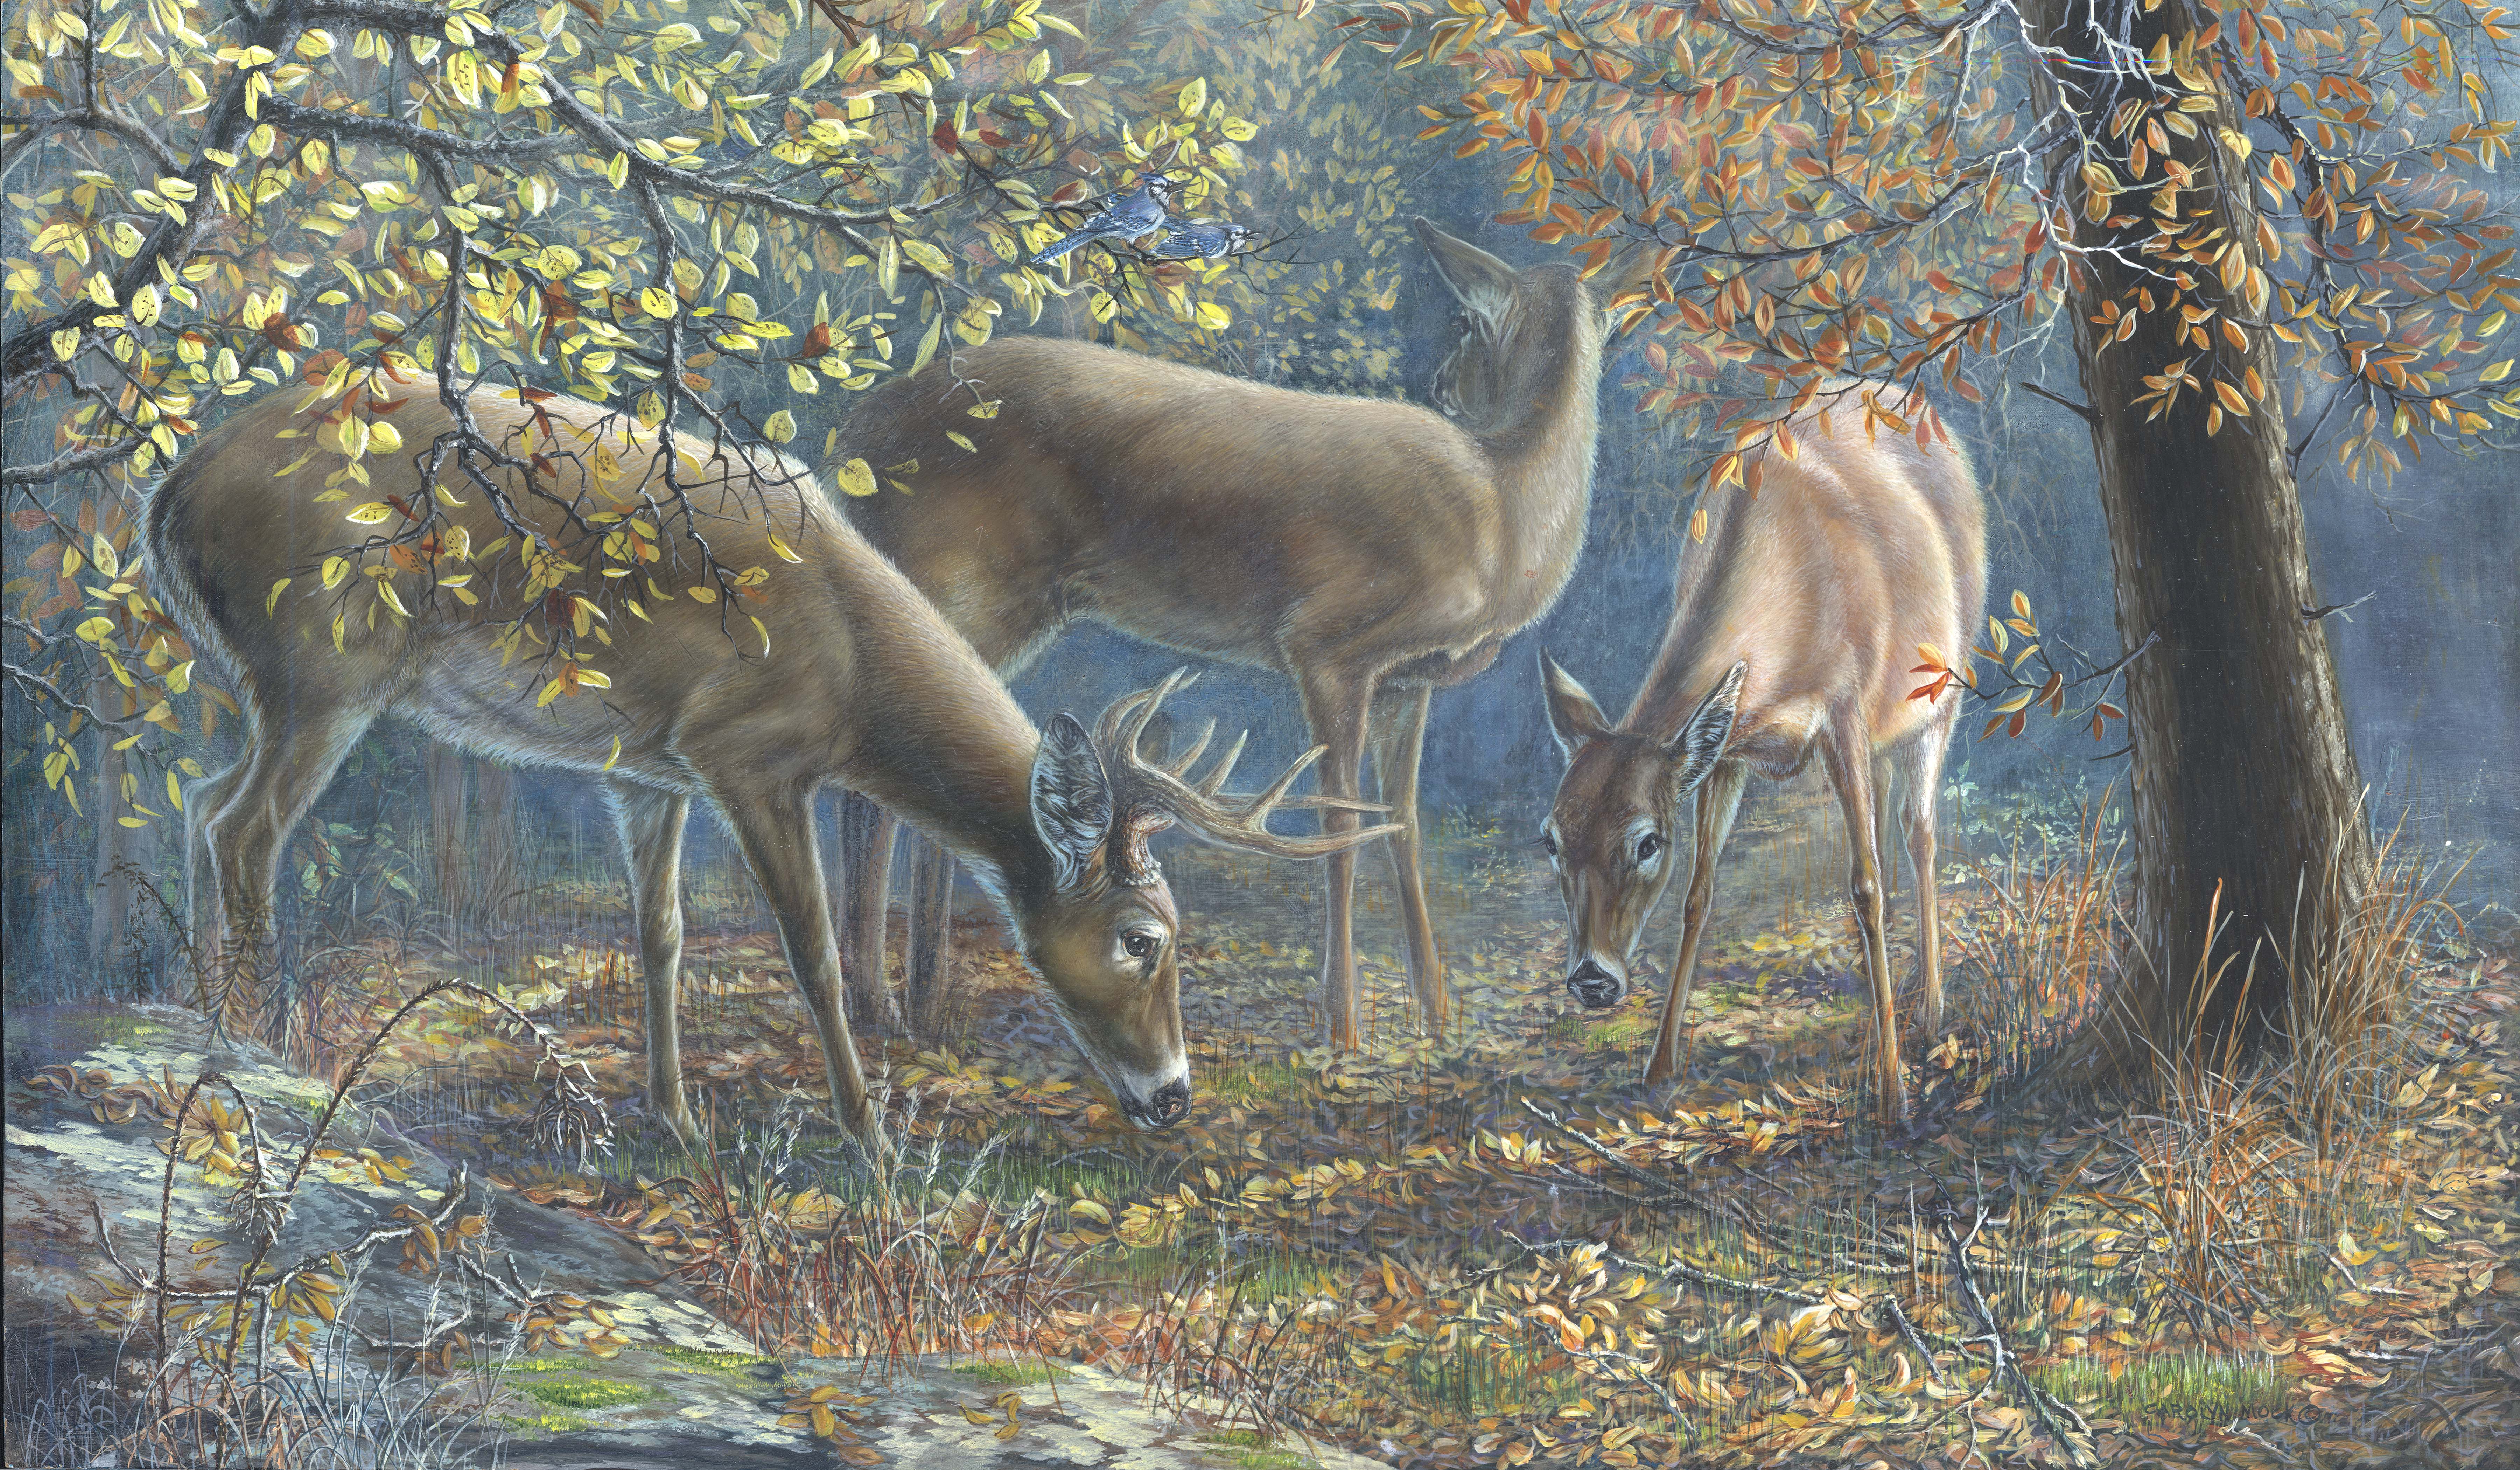 Deer graze in a wooded area